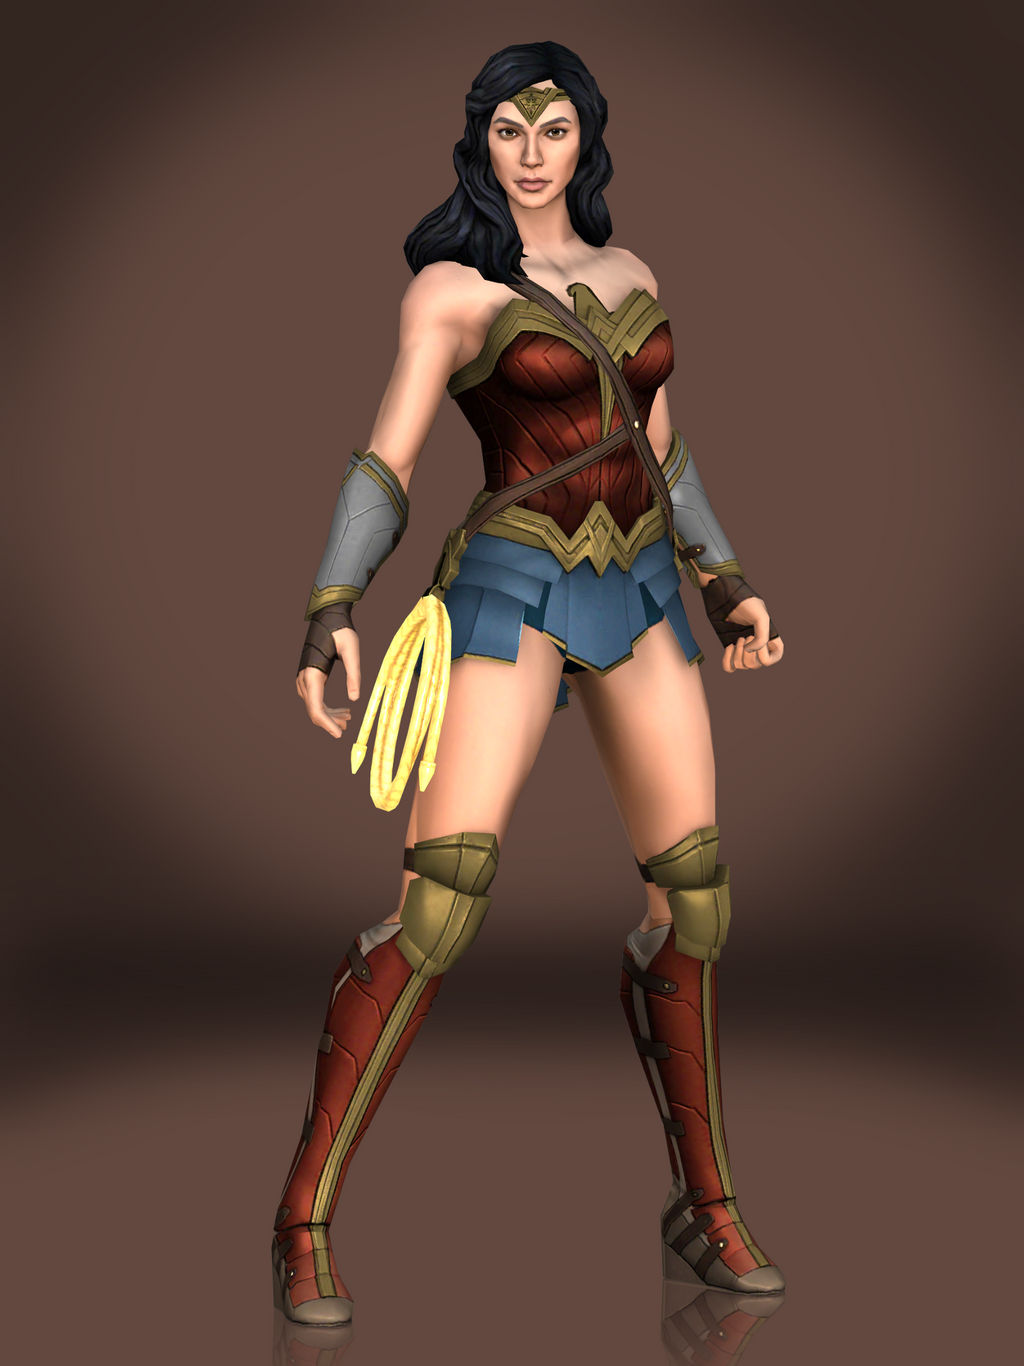 Wonder Woman (Movie) by Sticklove on DeviantArt